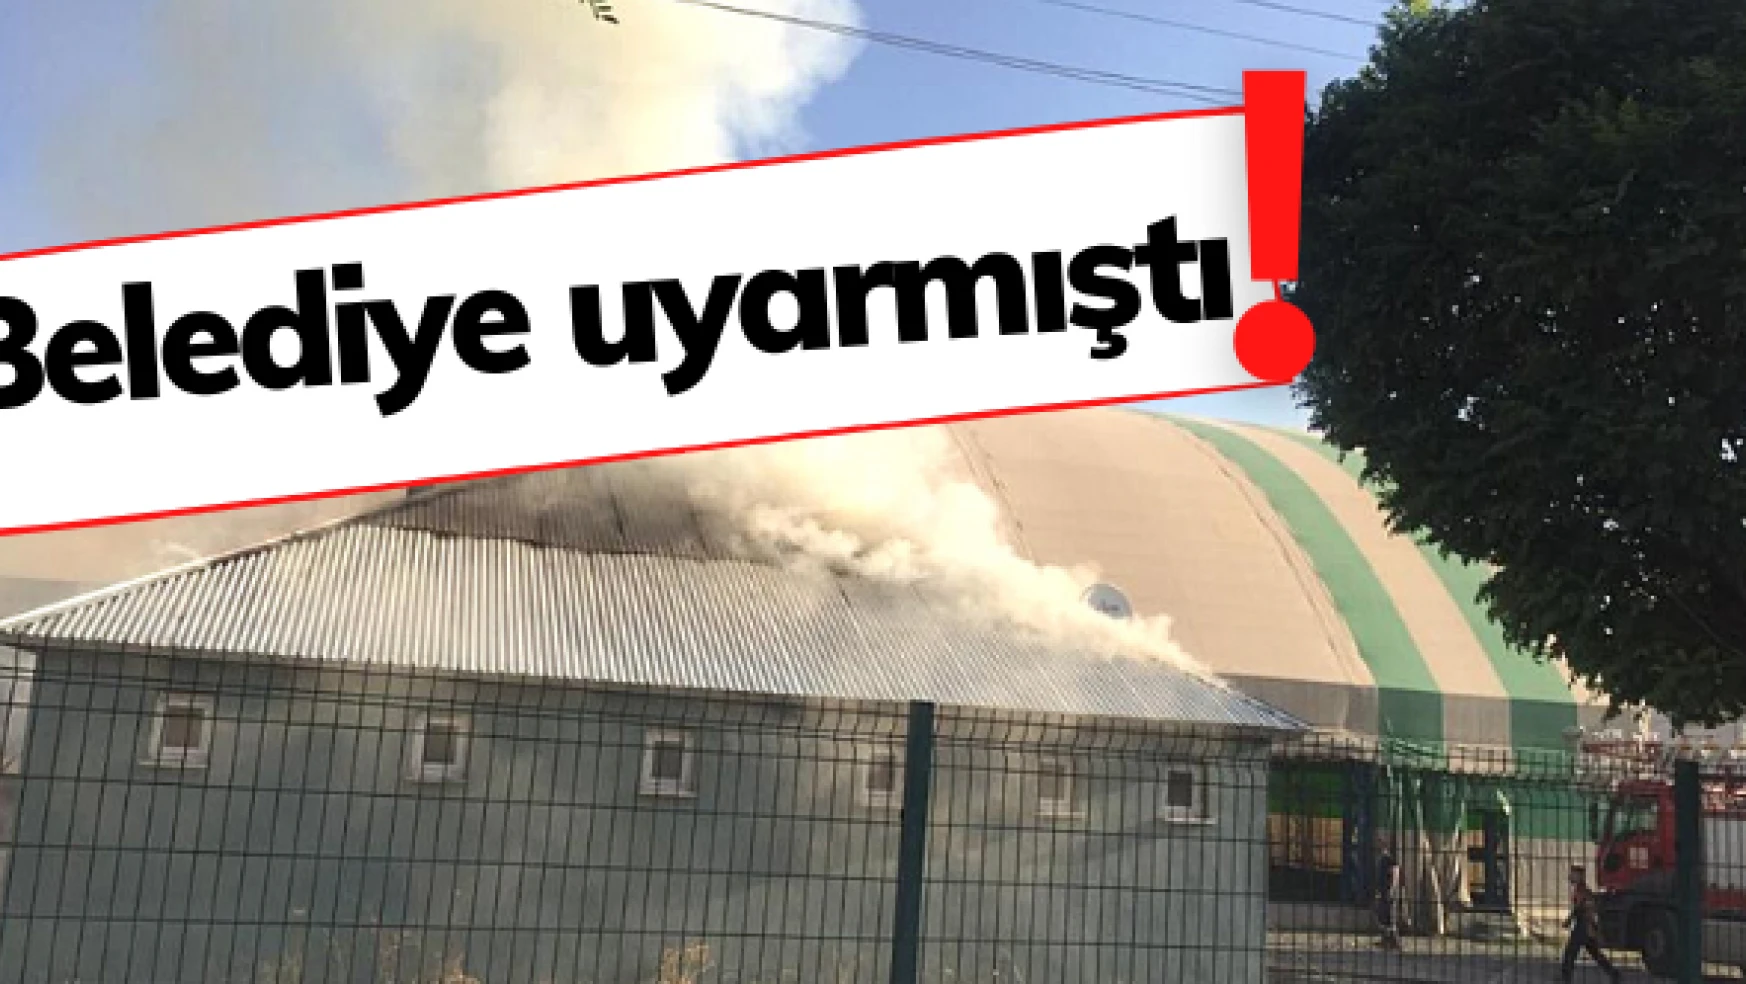 Aras EDAŞ'ın önlem almadığı yüksek gerilim hatlarında yangın: Ağrı Belediyesi uyarmıştı